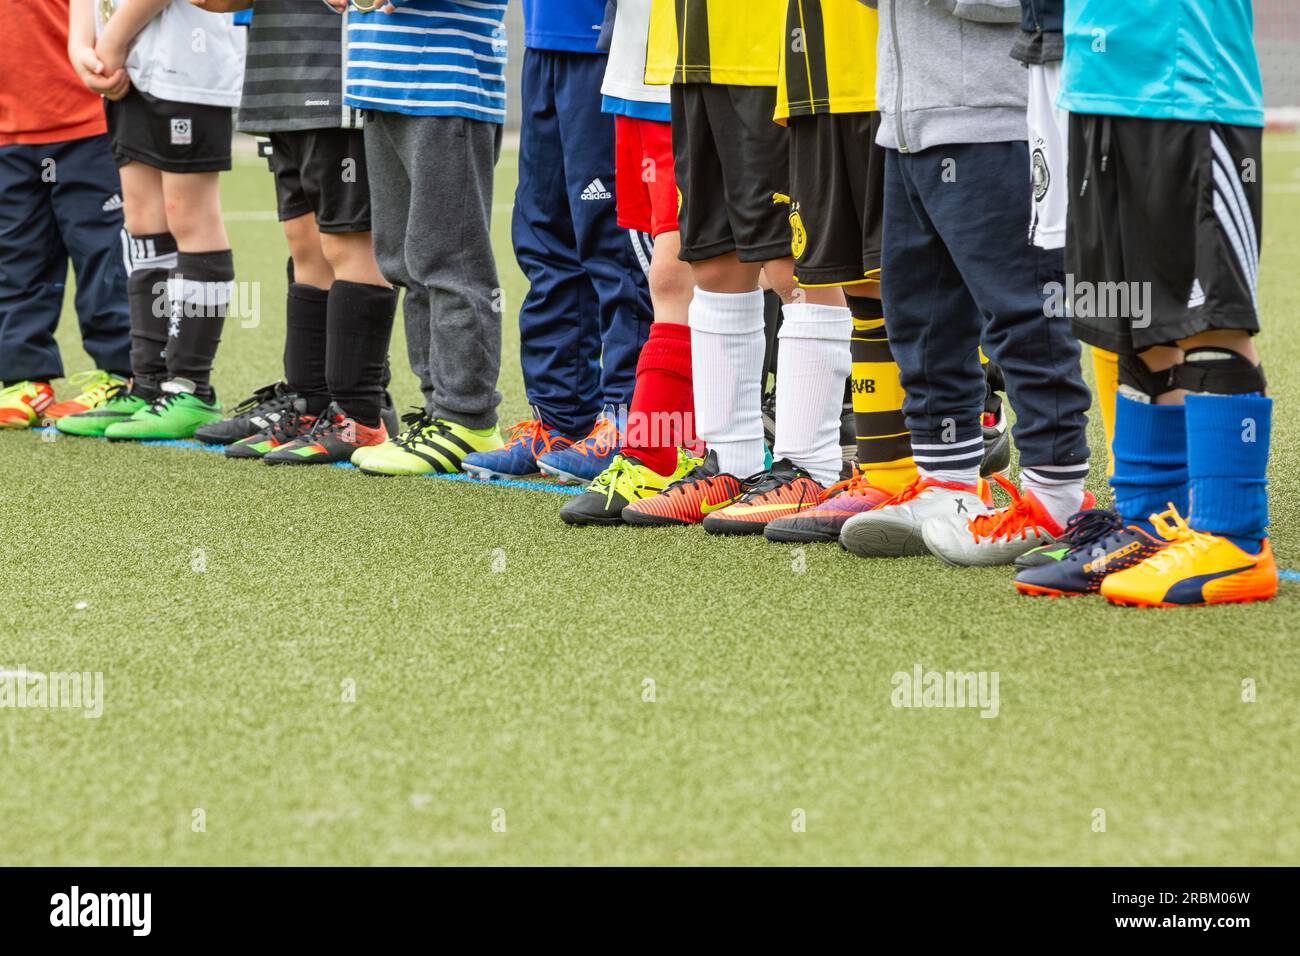 Squadra di calcio per bambini con scarpe di marca diversa Foto Stock